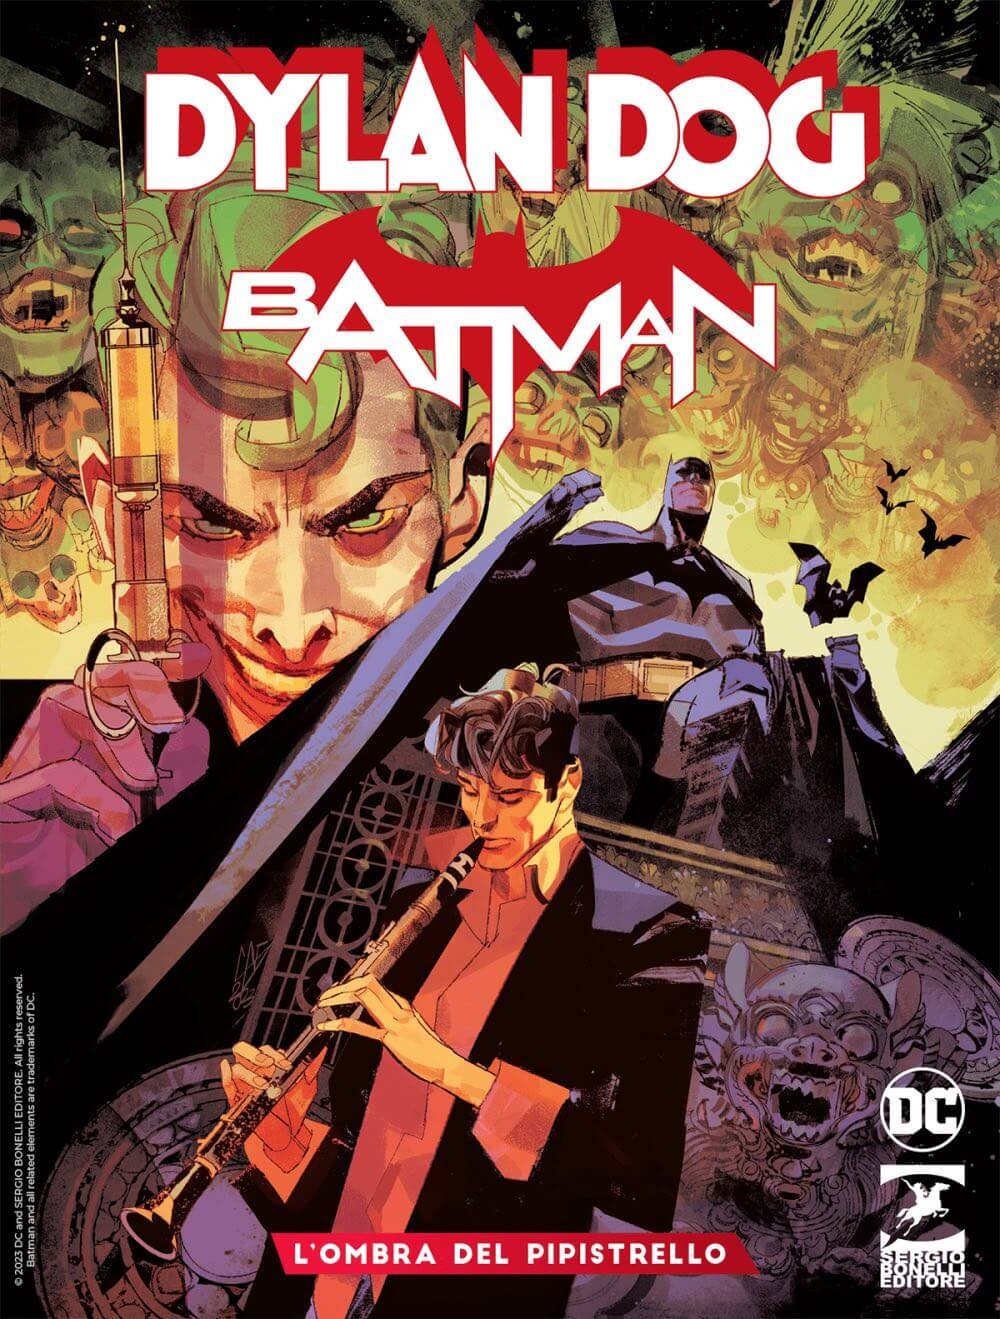 Couverture de Dylan Dog et Batman : L'ombre de la chauve-souris 1, par Gigi Cavenago